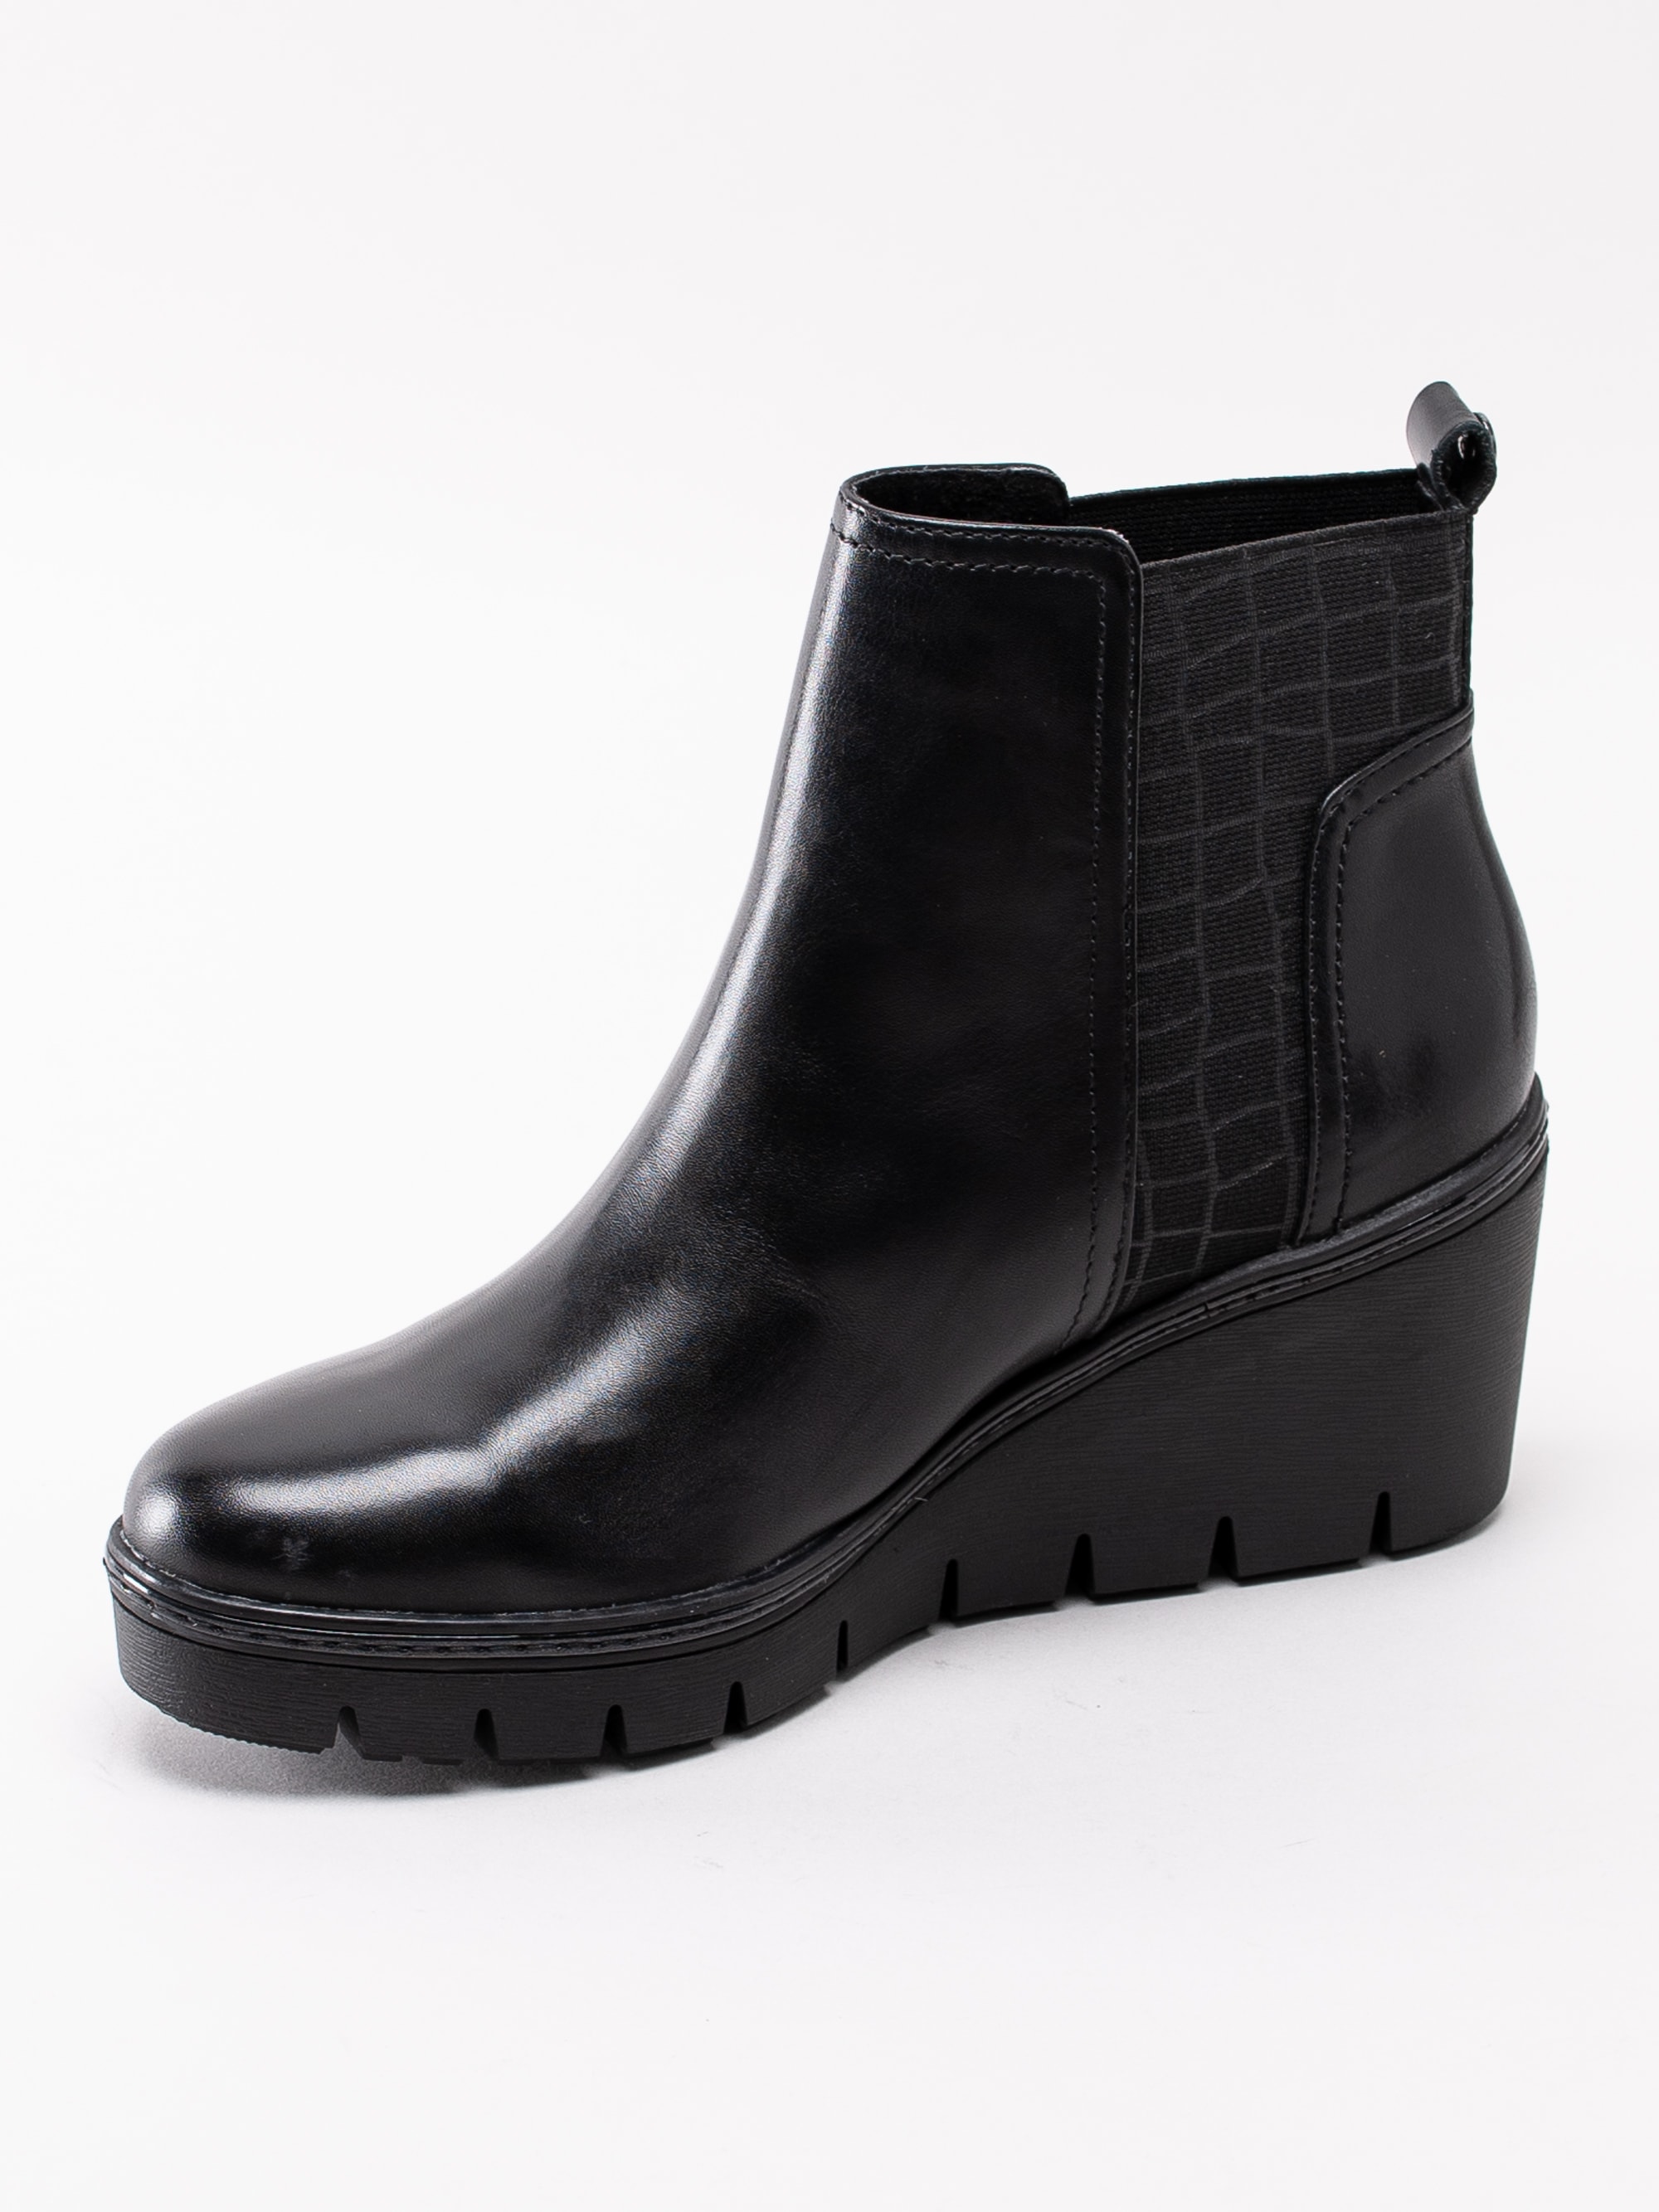 10193125 Tamaris 1-25430-23-001 svarta kilklackade platå boots med mönstrad resår-2